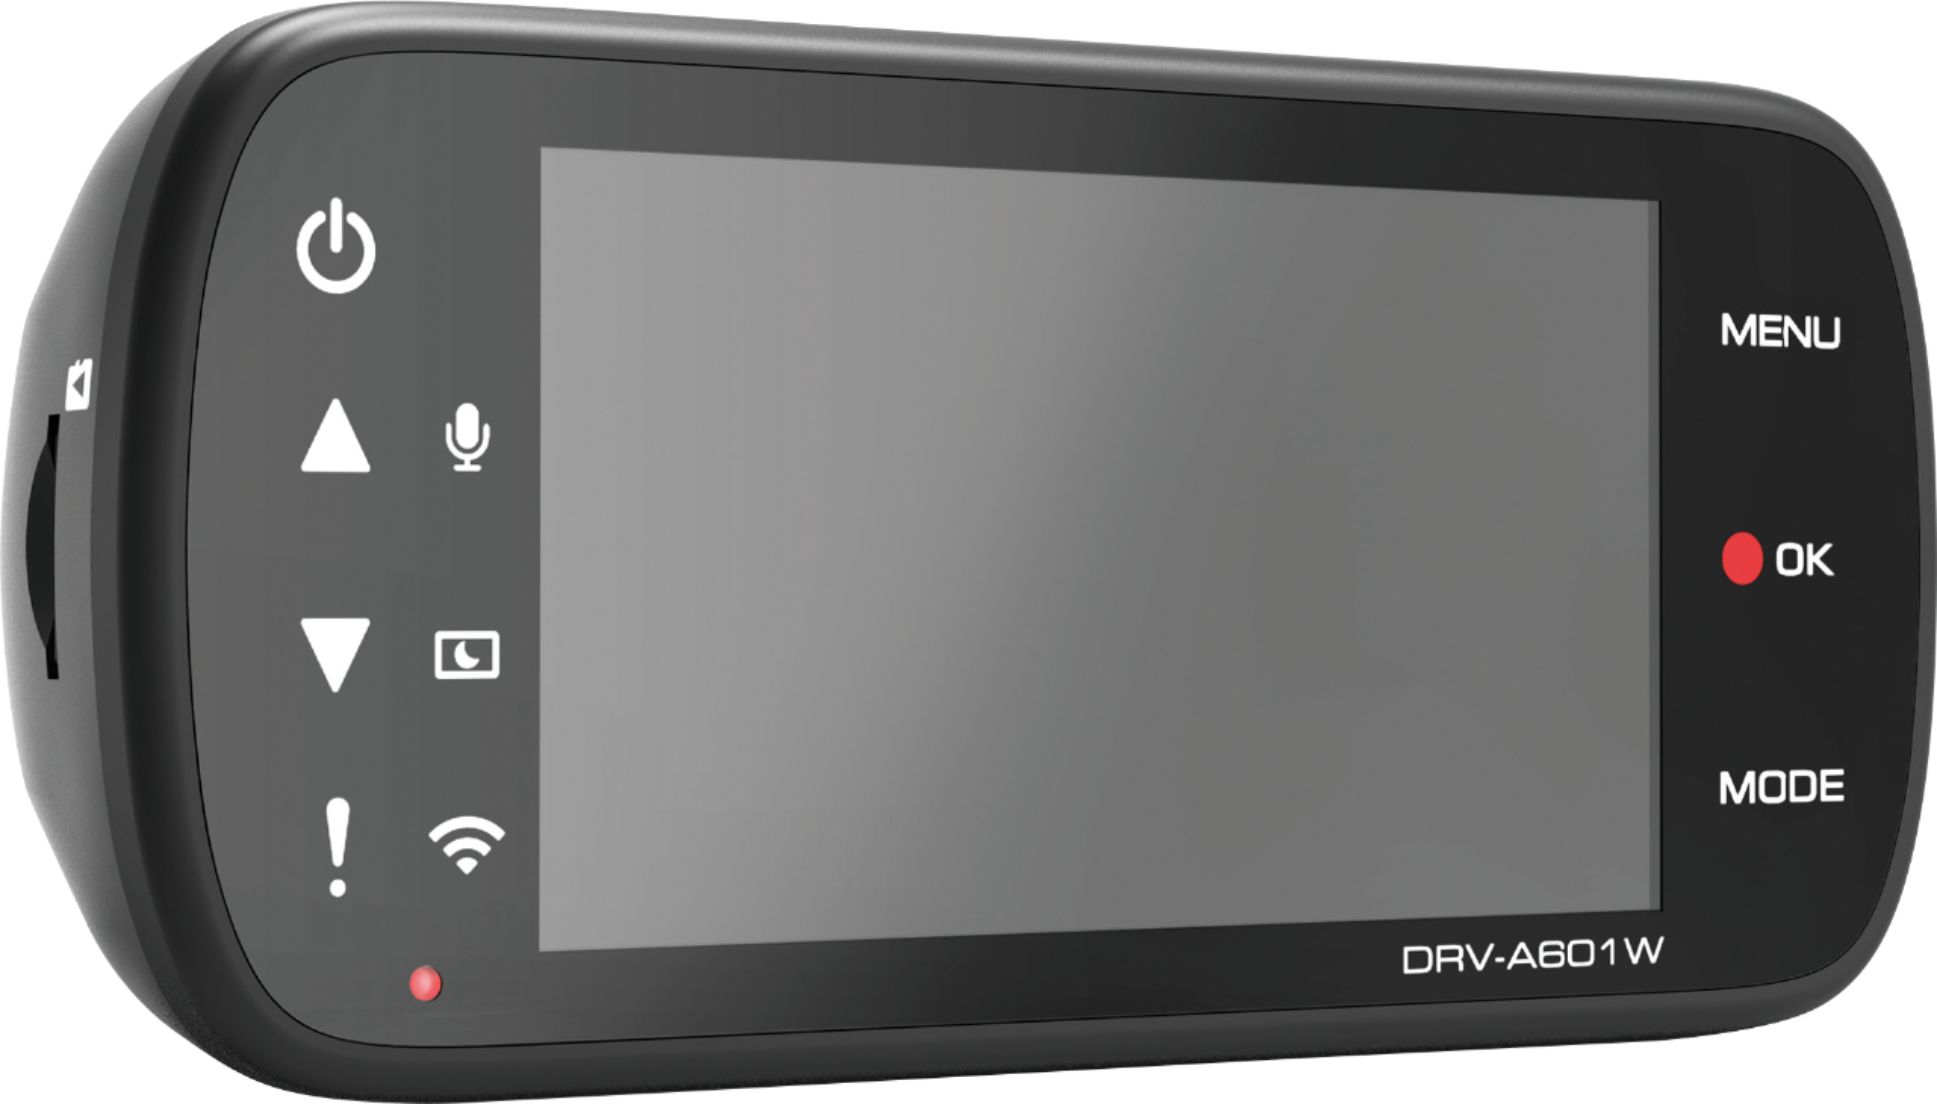 Kenwood DRV-A601W 4K Dash Cam DRV-A601W - Best Buy